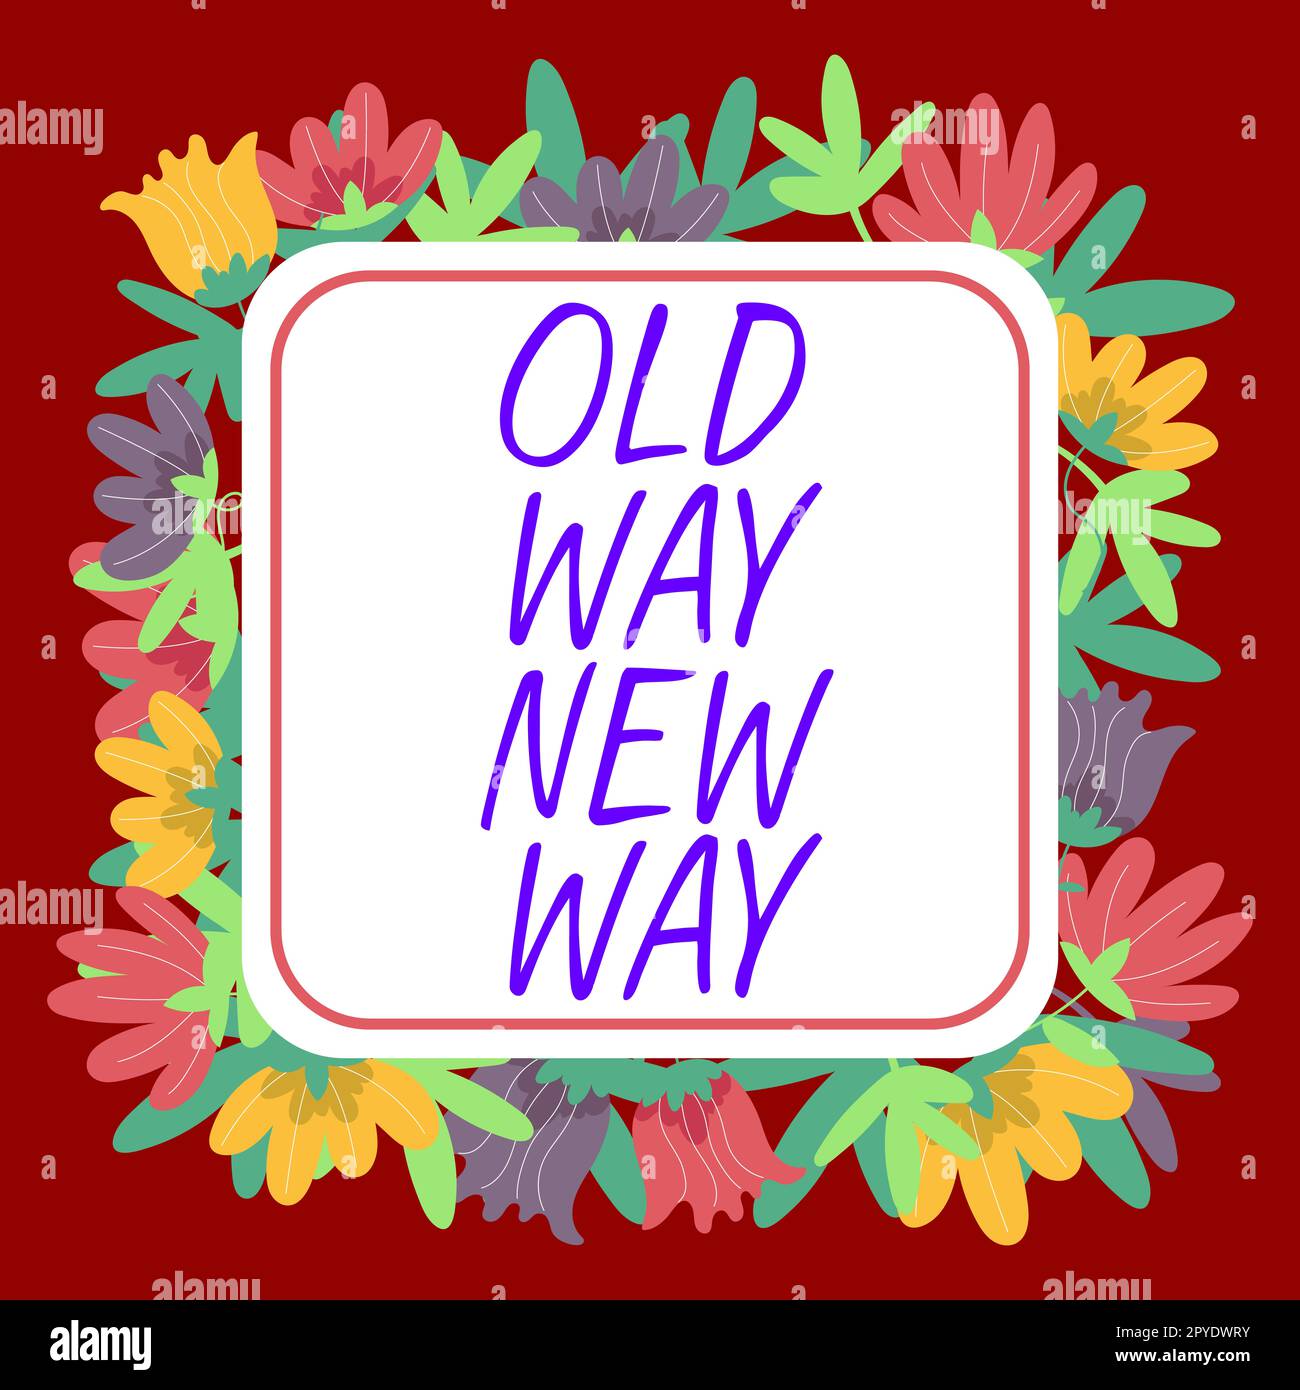 Leyenda de texto Presentando Old Way New Way. Foto conceptual hablando de cómo puede hacerlo, como la acción que puede tomar Foto de stock